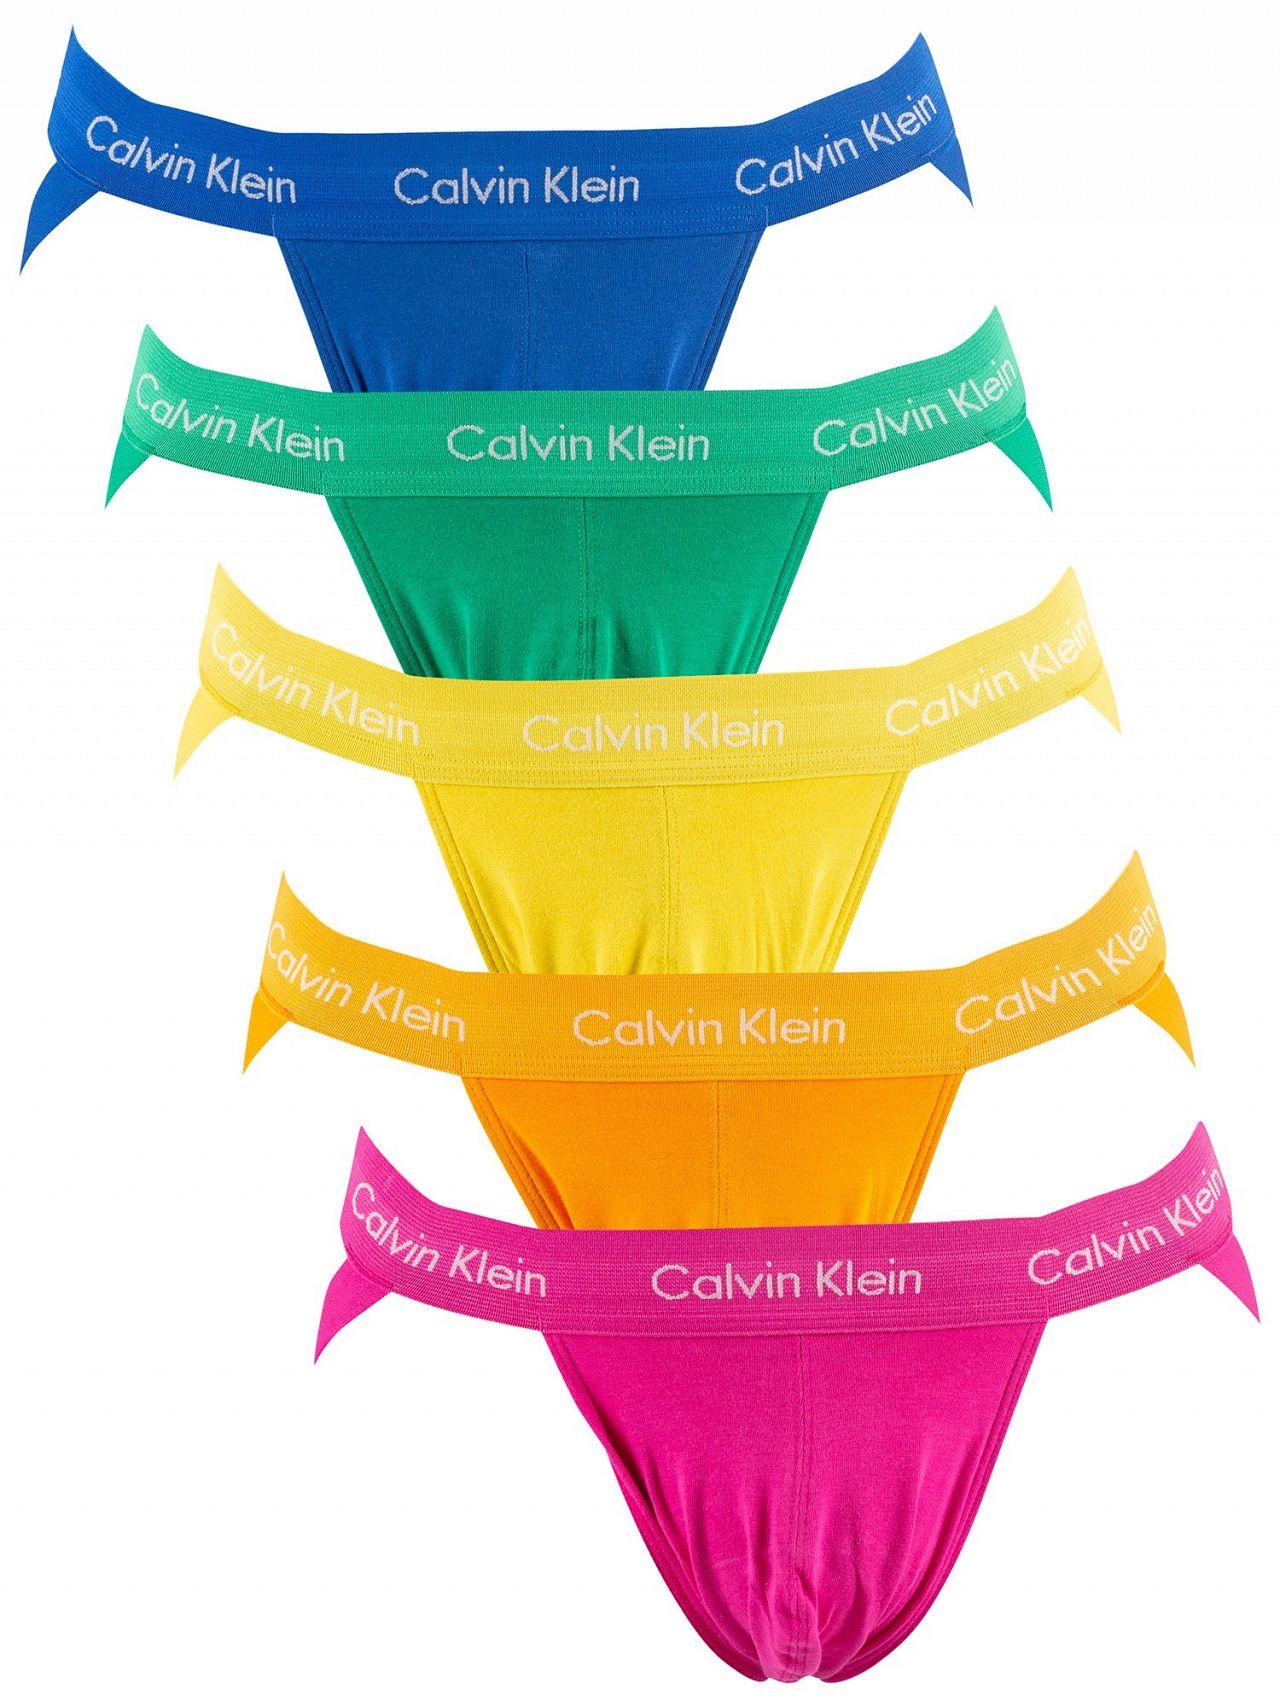 Calvin Klein Pride Colours 5 Pack Jockstraps for Men | Lyst Australia